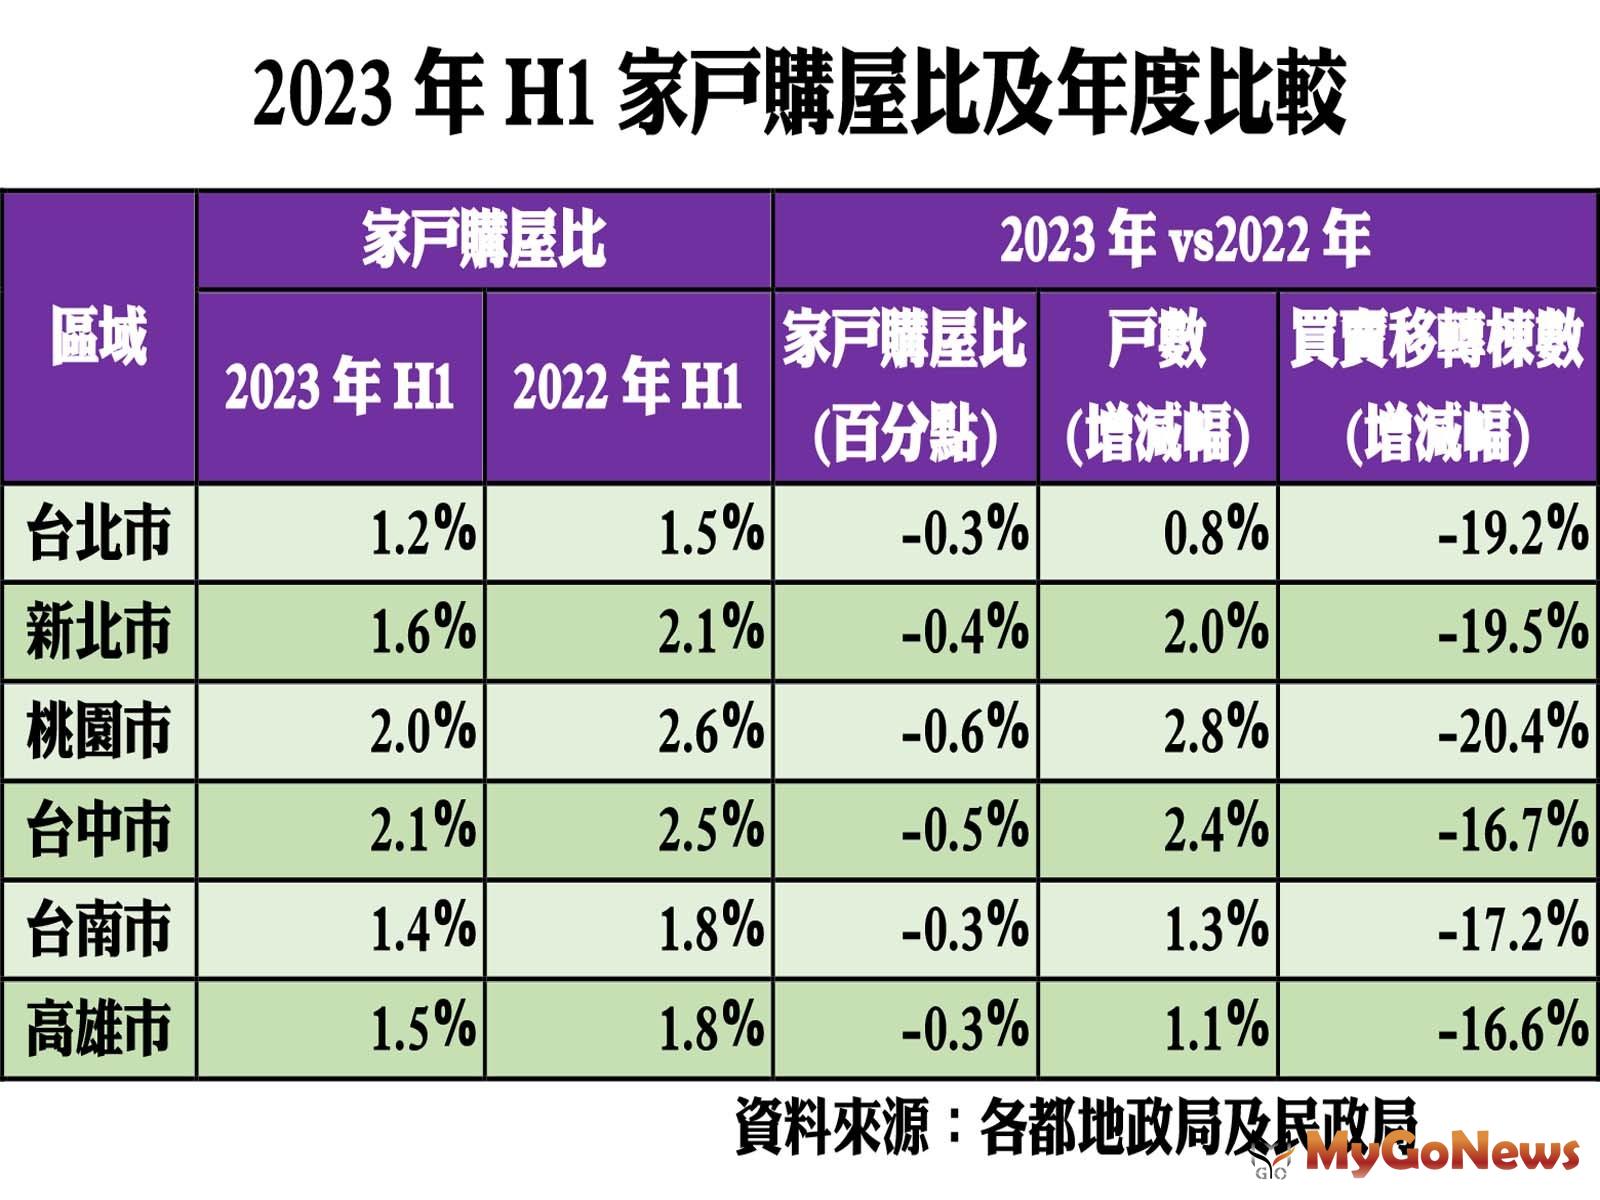 2023年H1家戶購屋比及年度比較 MyGoNews房地產新聞 市場快訊